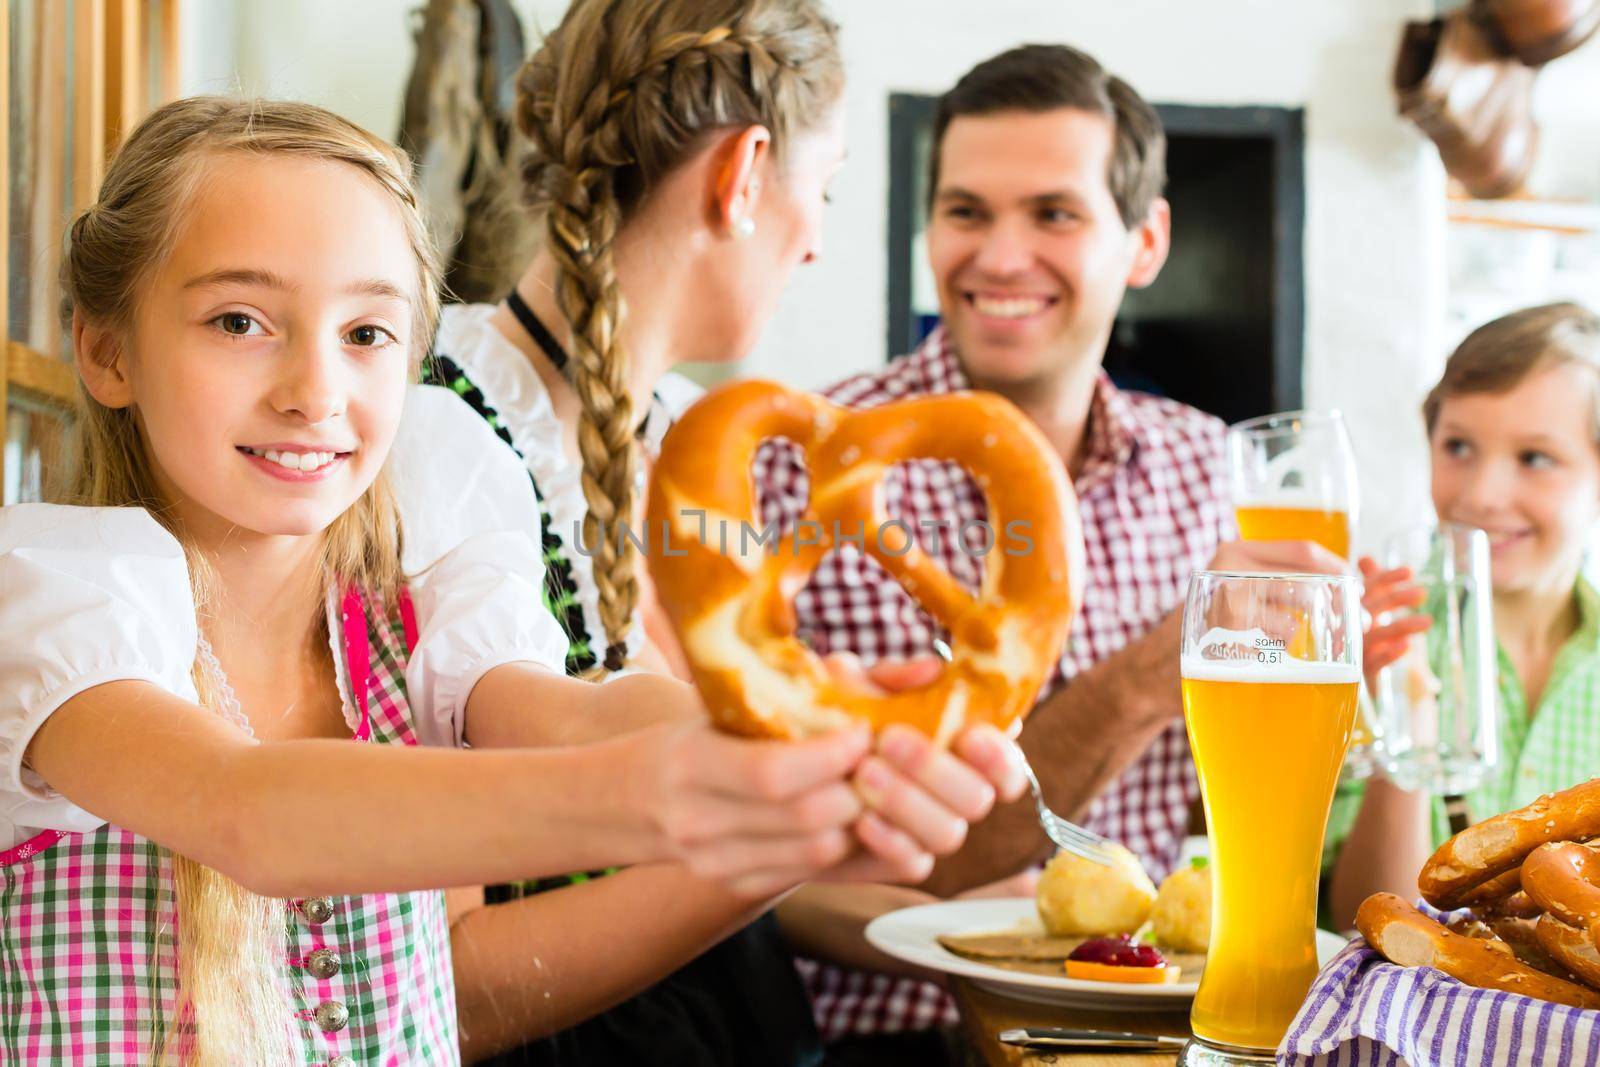 Bavarian girl with family in restaurant by Kzenon